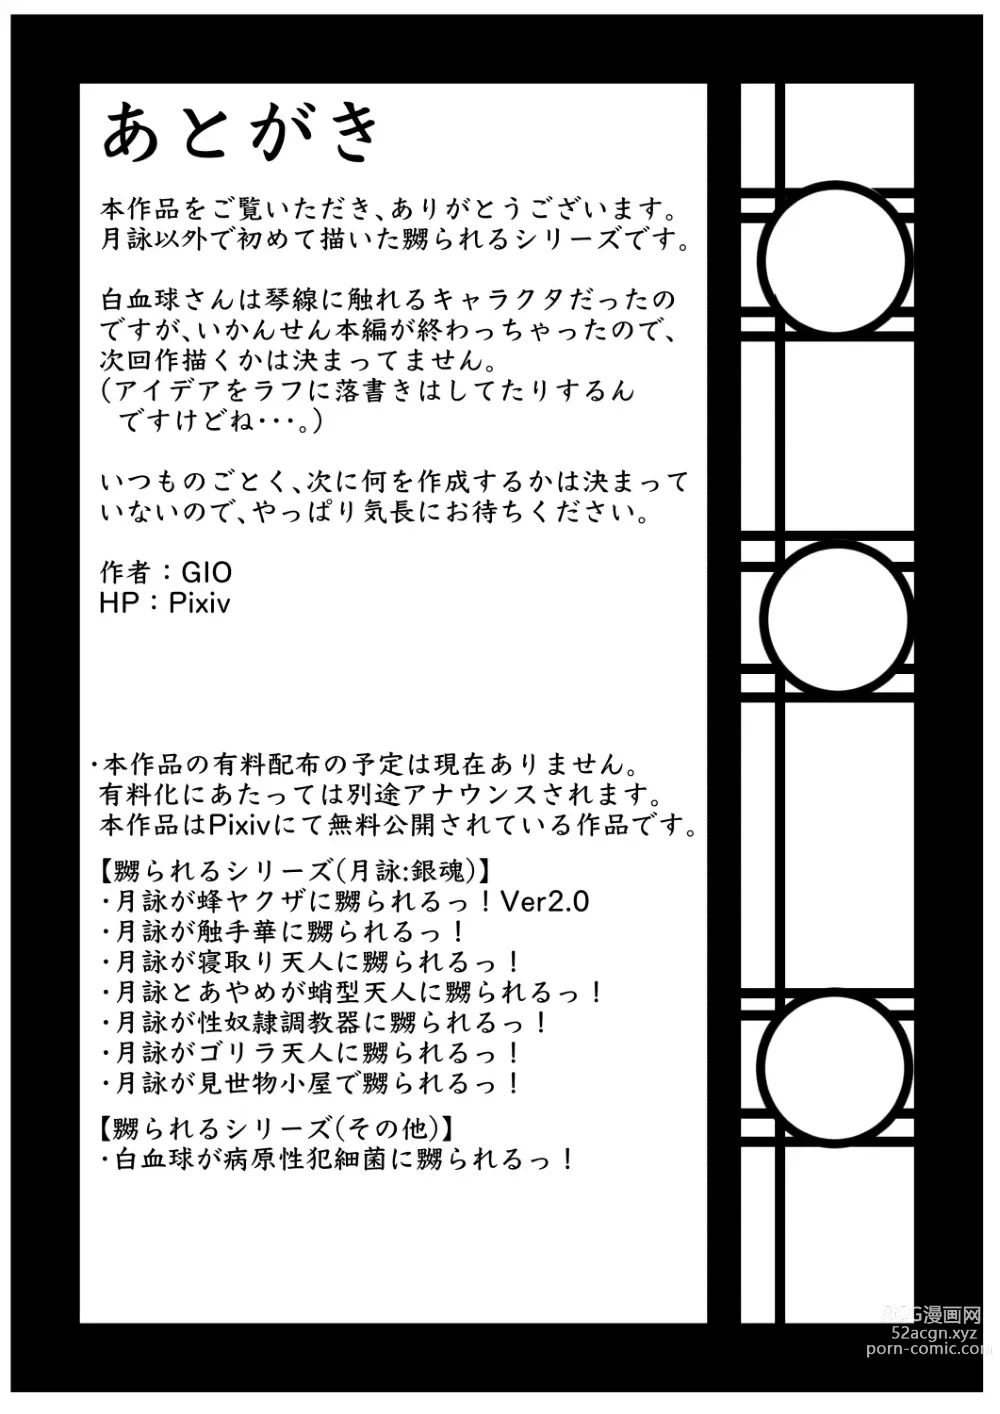 Page 39 of doujinshi Hakkekkyuu ga Byougen-sei-han Saikin ni Nabura Rerutsu!